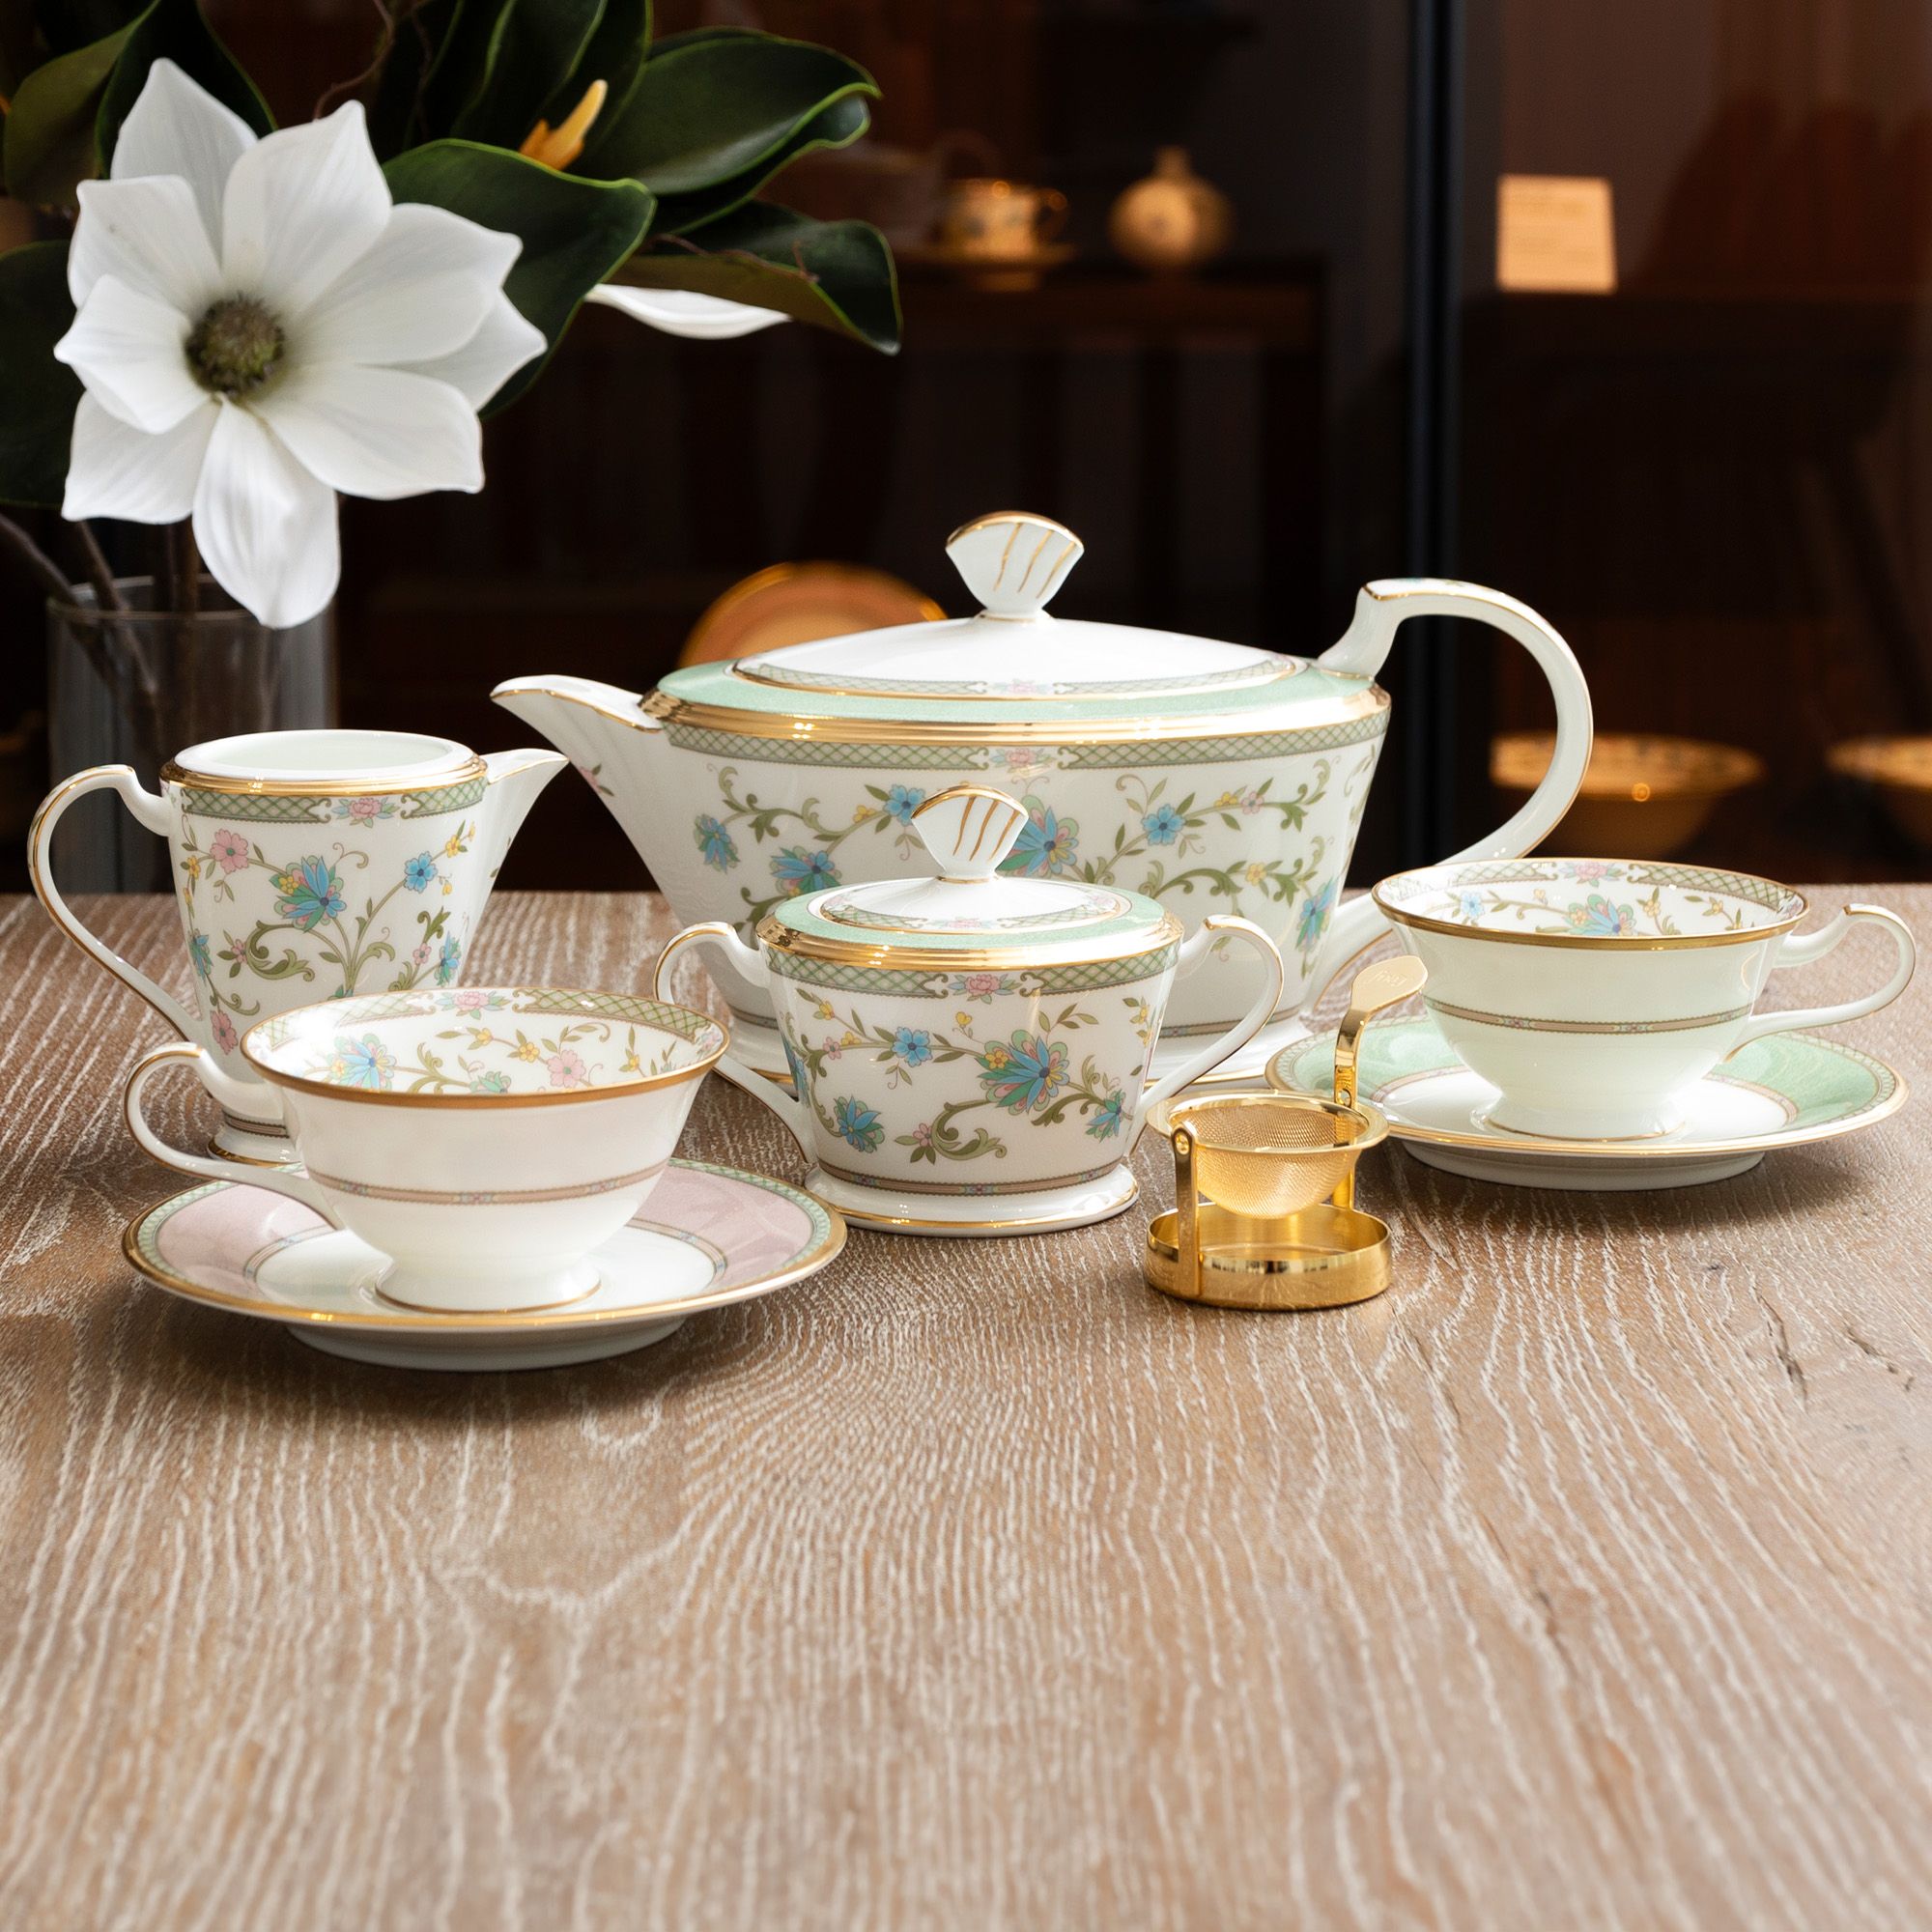  Chén trà (tách trà) dáng loe 220ml kèm đĩa lót màu hồng | Yoshino 9983-7J-Y59587 